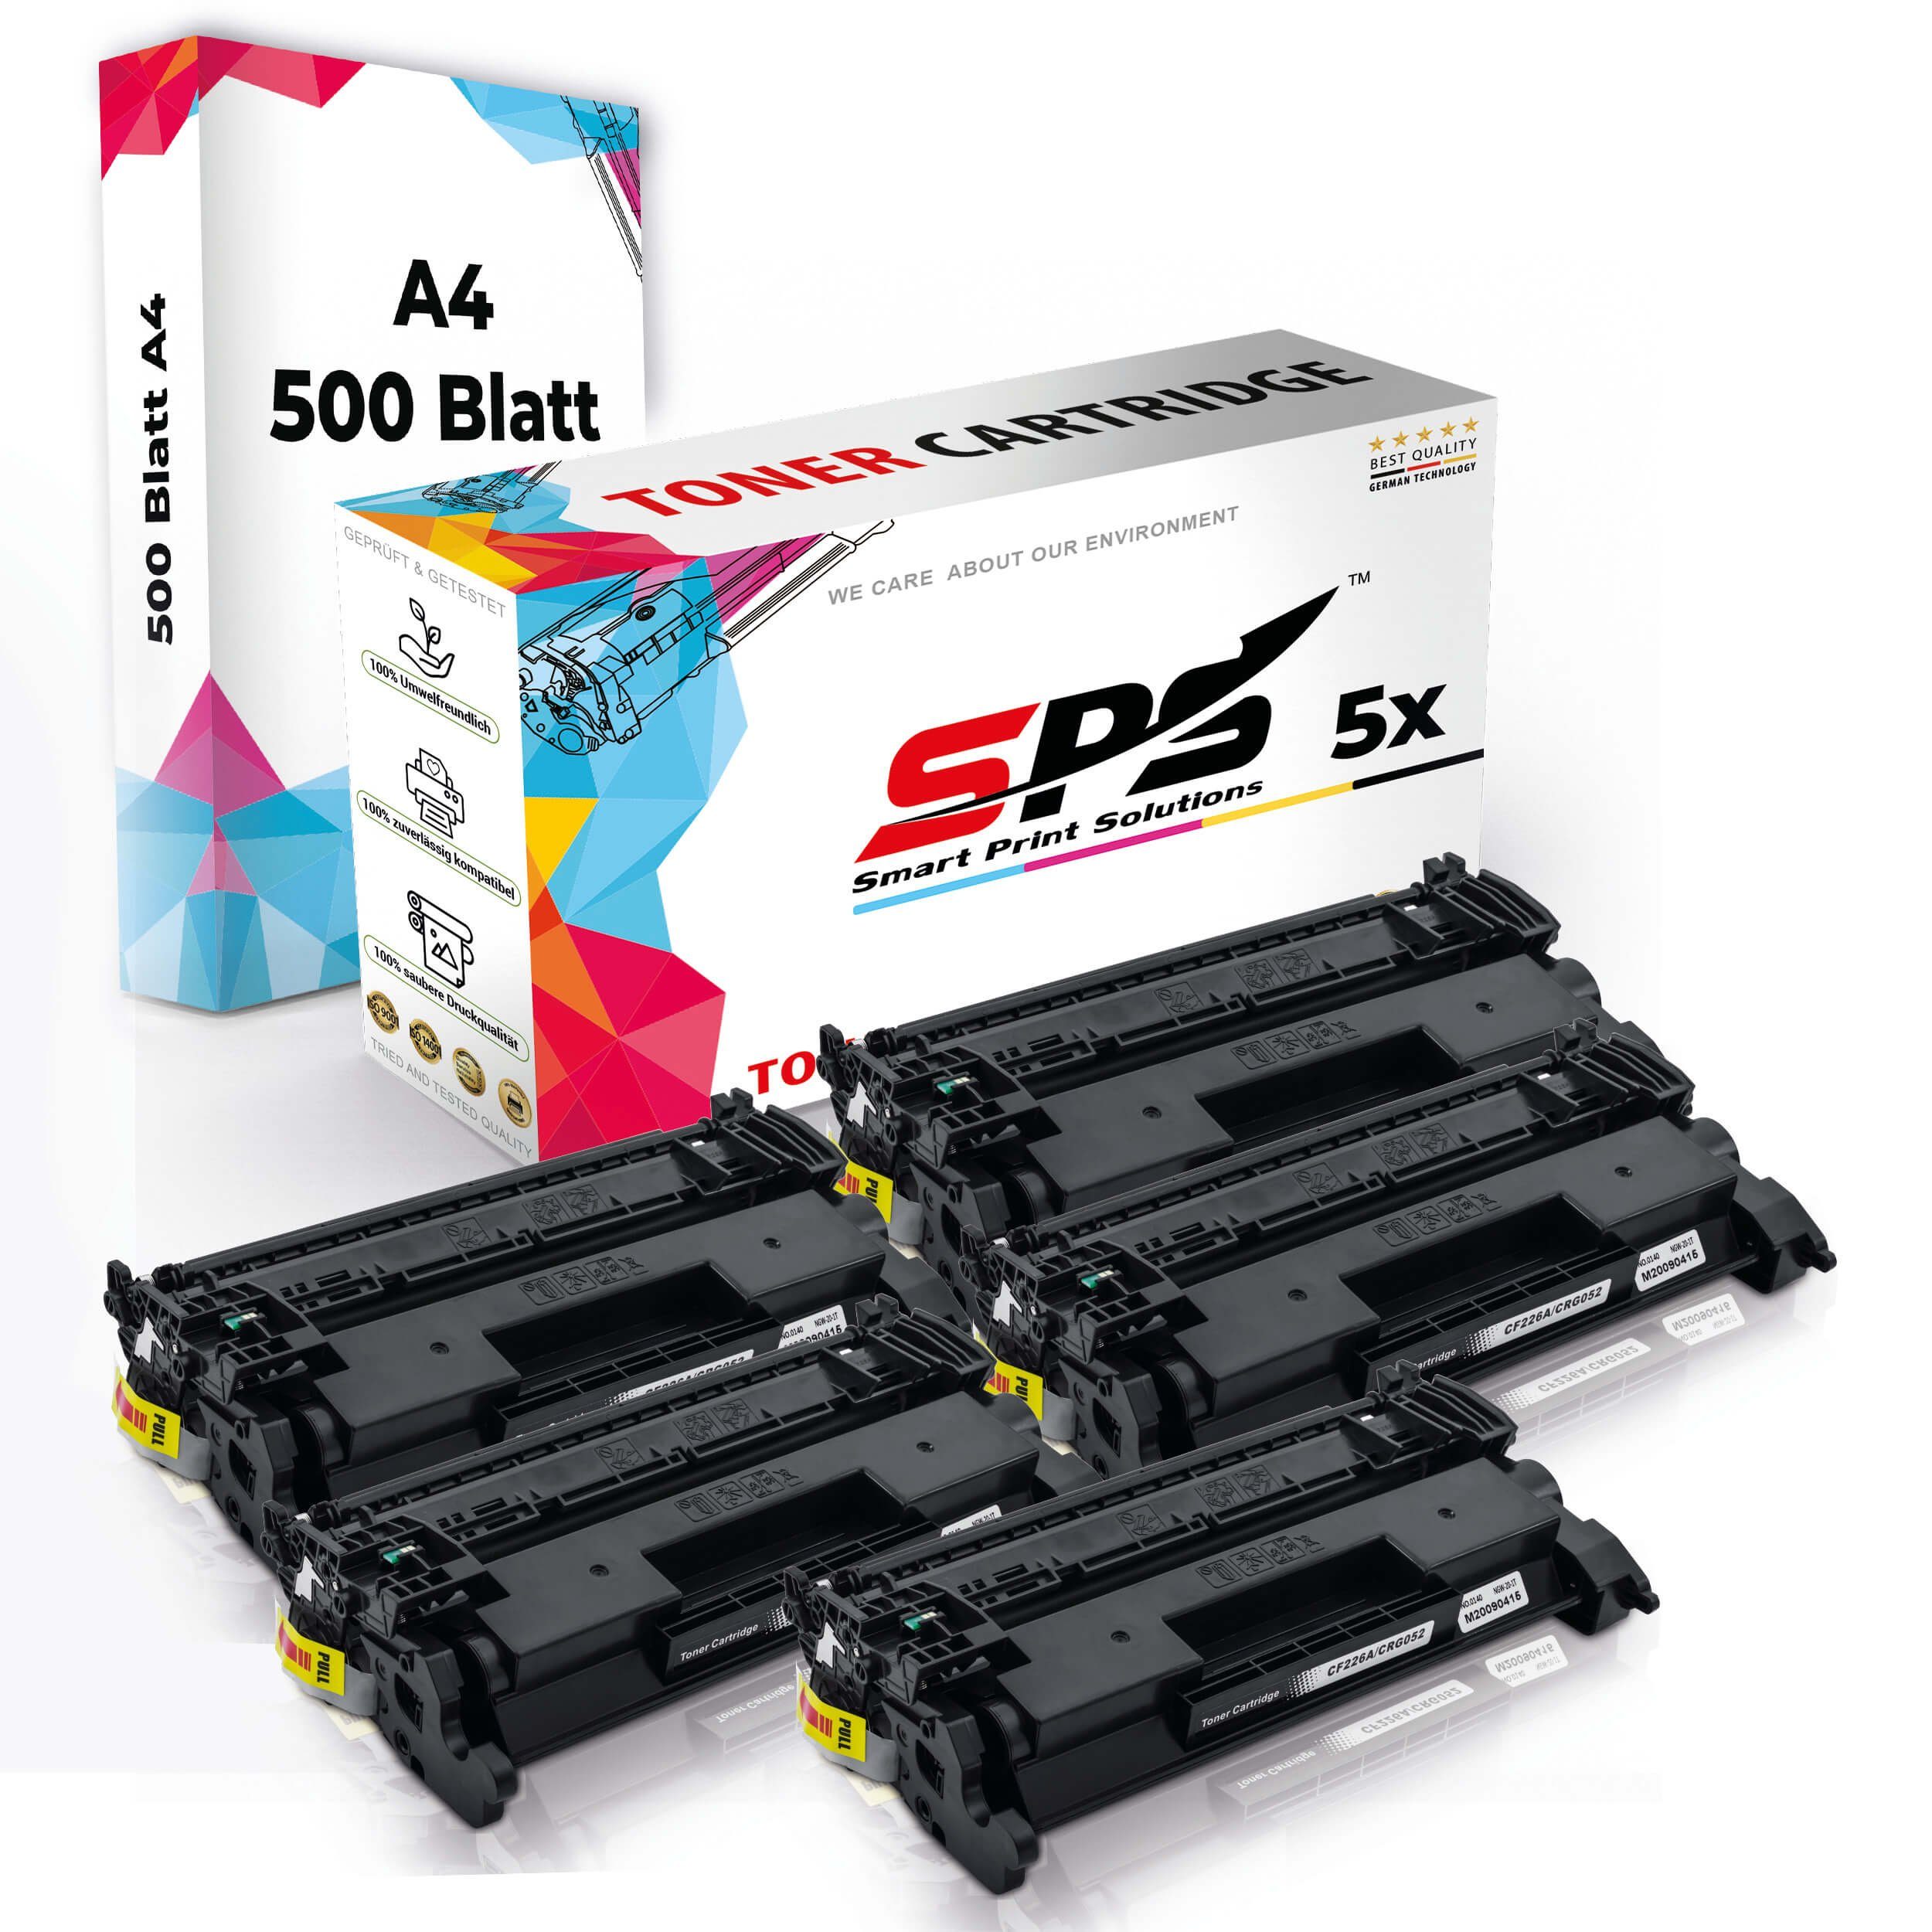 Pack, Kompatibel, Druckerpapier) Toner,1x Set A4 Multipack SPS 5x Druckerpapier (5er Tonerkartusche A4 5x +